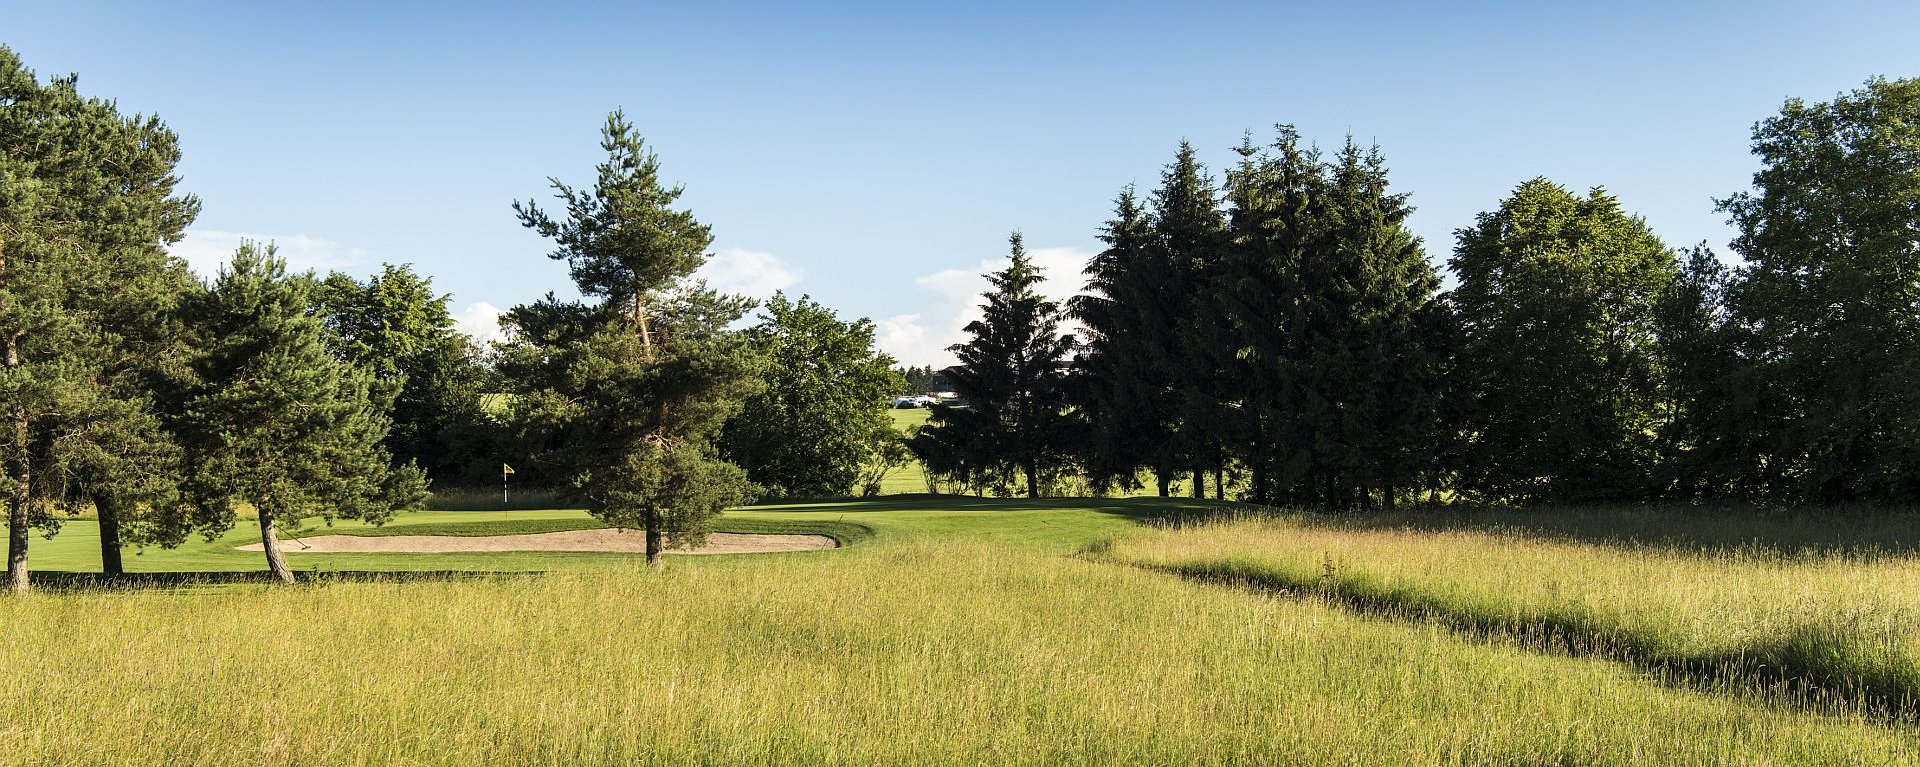 Der Vordergrund zeigt aus dichtem, hohen Gras bestehendes unspielbares Gelände – der Hintergrund zeigt ein von gepflegten alten Bäumen umringtes Loch mit Bunker, auf dem Golfplatz des Allgäuer Golf- und Landclub e.V. (Credit: Stefan von Stengel)